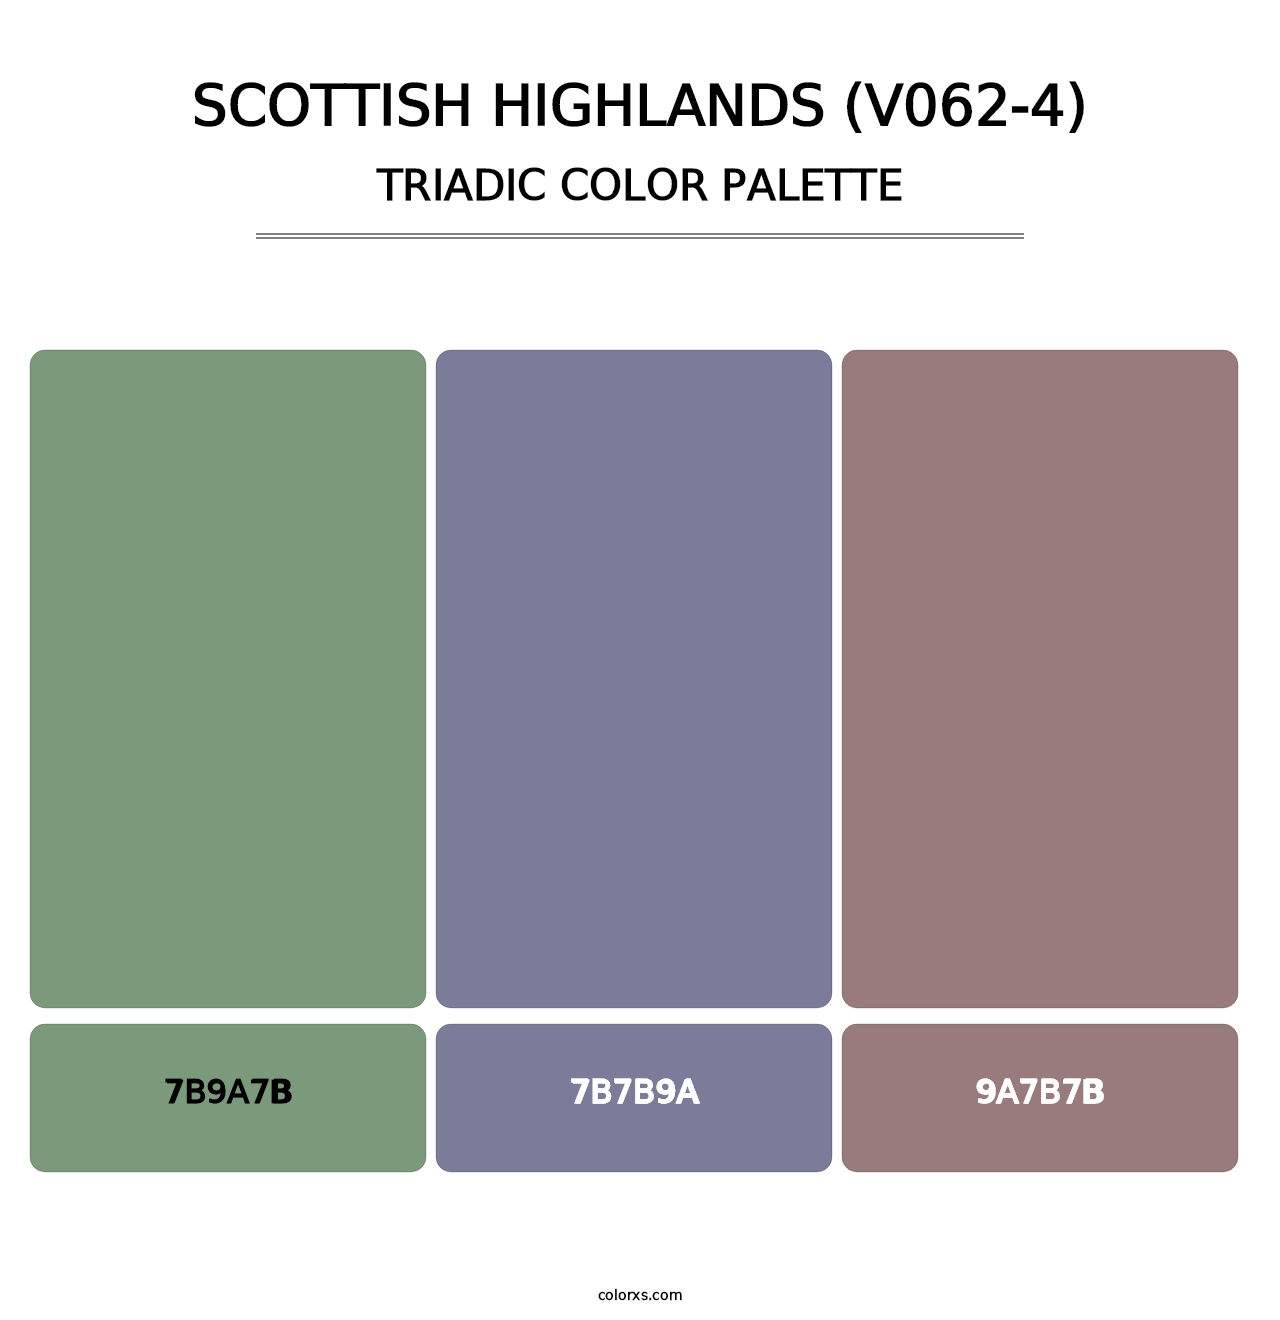 Scottish Highlands (V062-4) - Triadic Color Palette